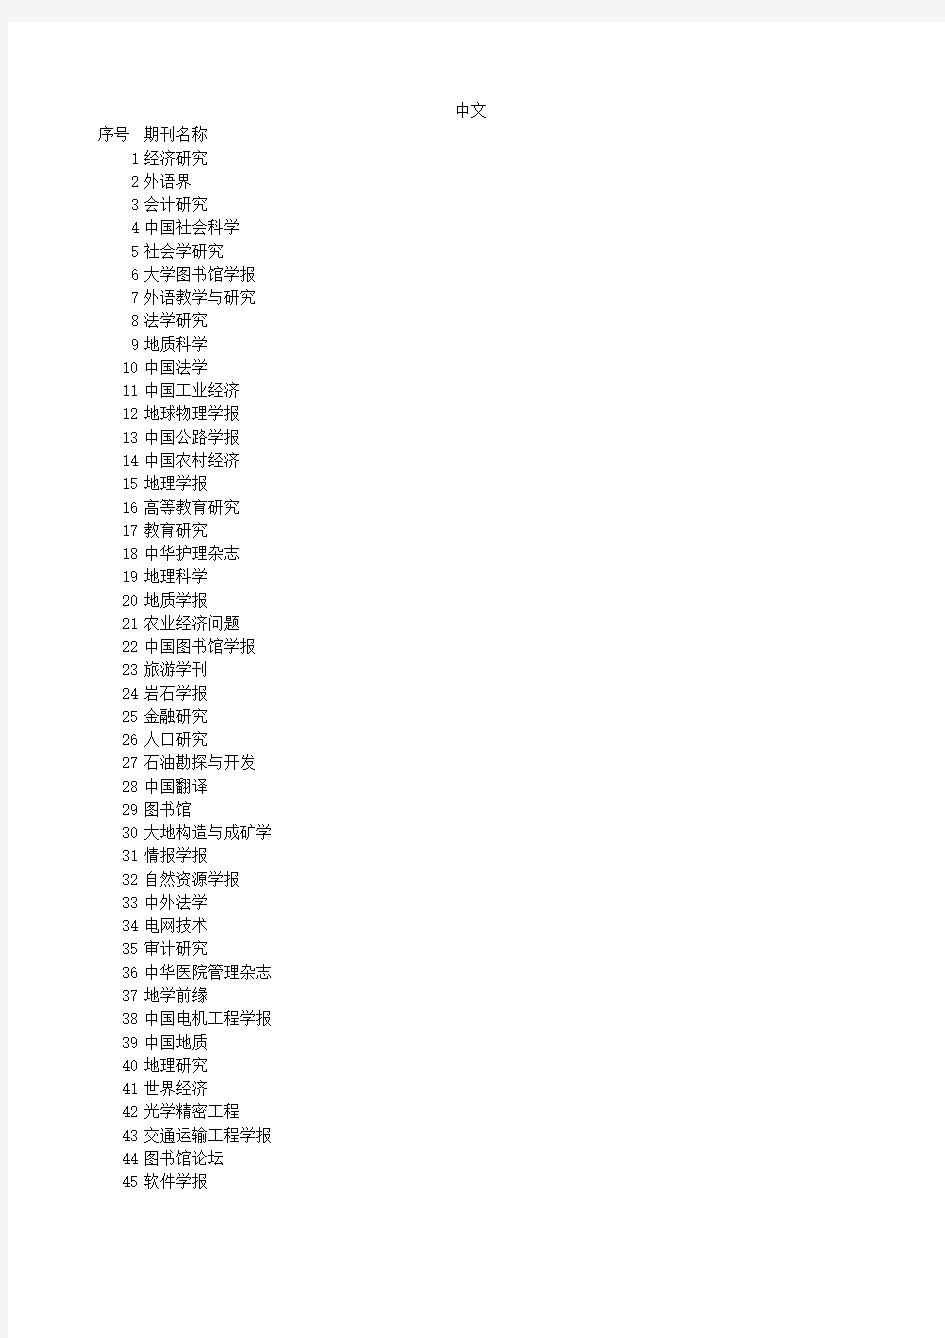 中文核心期刊影响因子排序——前1200种期刊 (1)